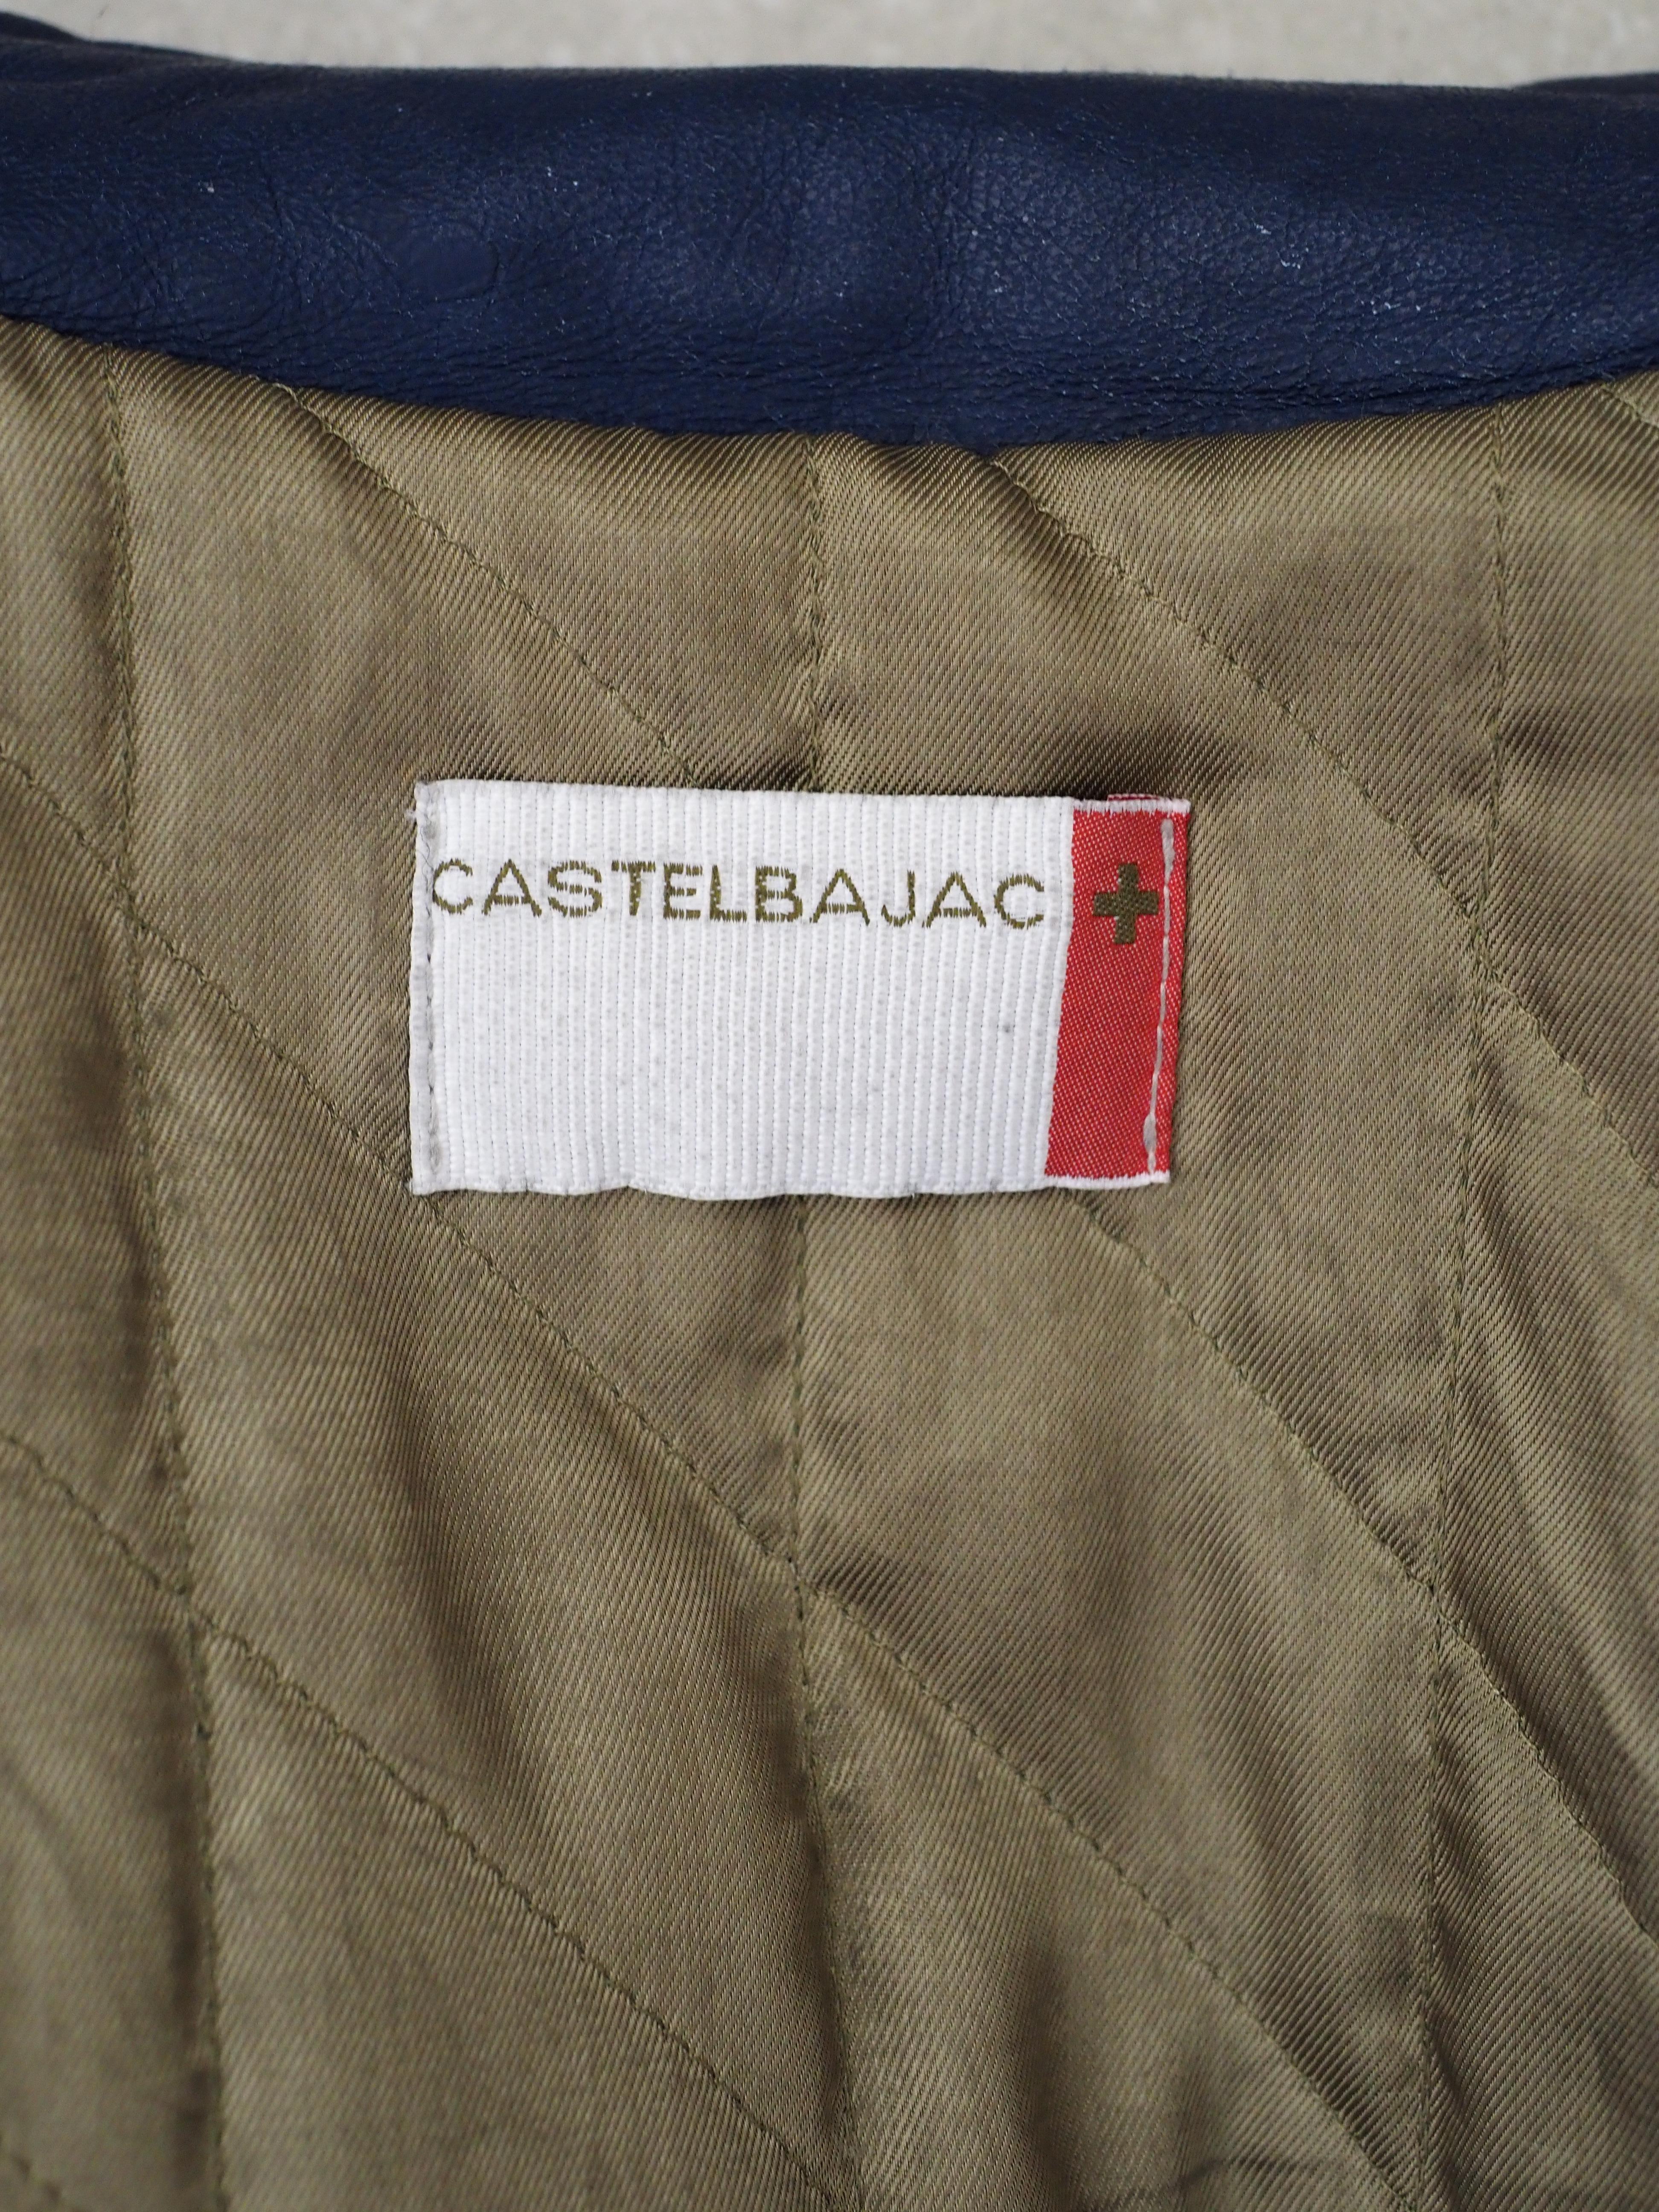 J. C. de Castelbajac blue leather jacket 1